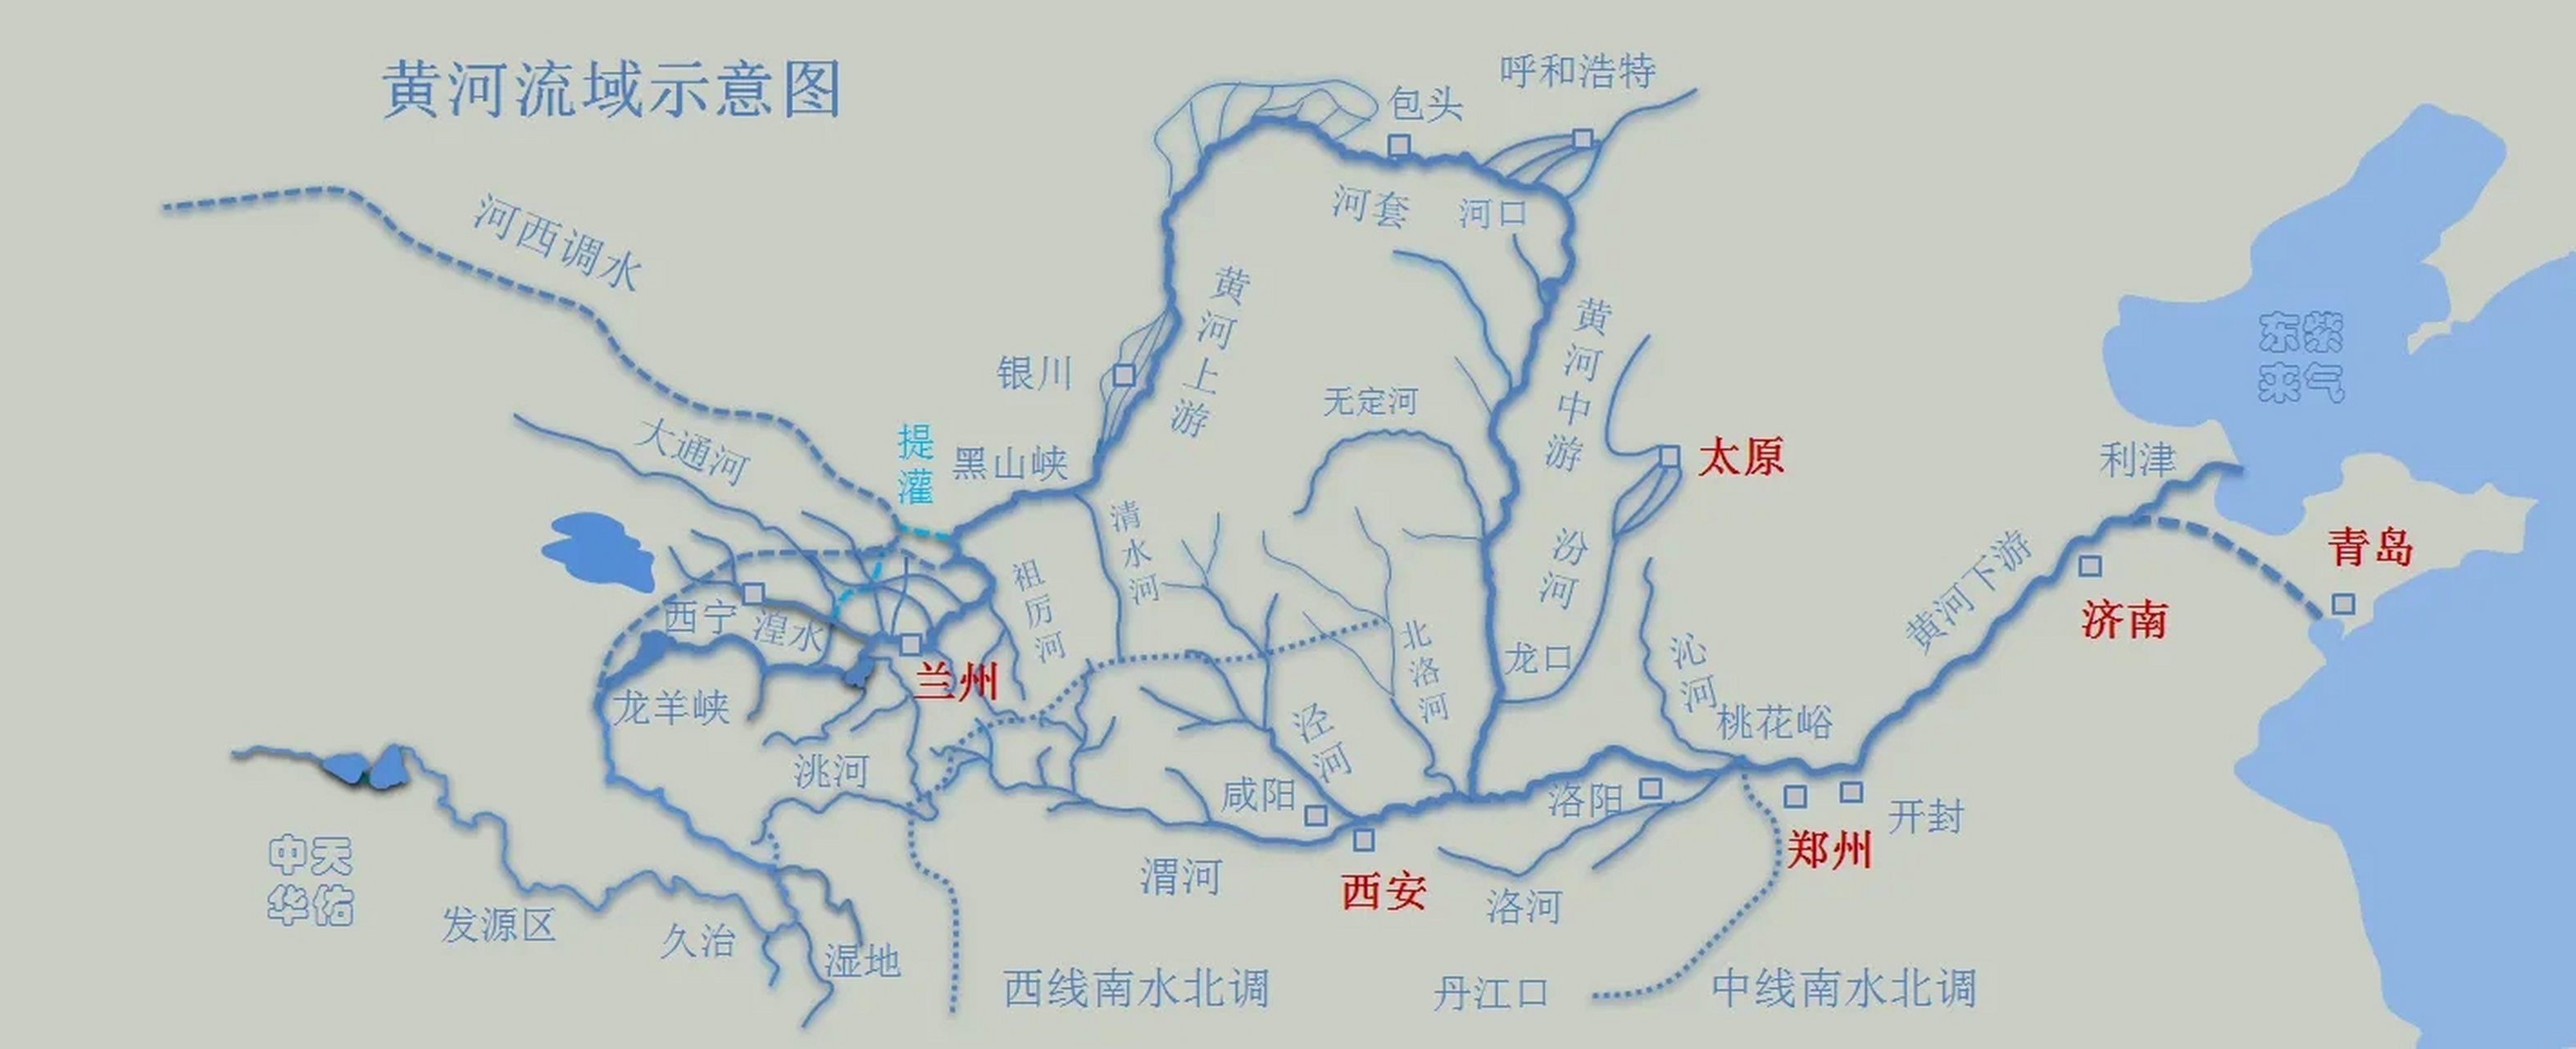 按照长江五虎对干流和支流城市的分类,西安与太原属支流城市,黄河五虎